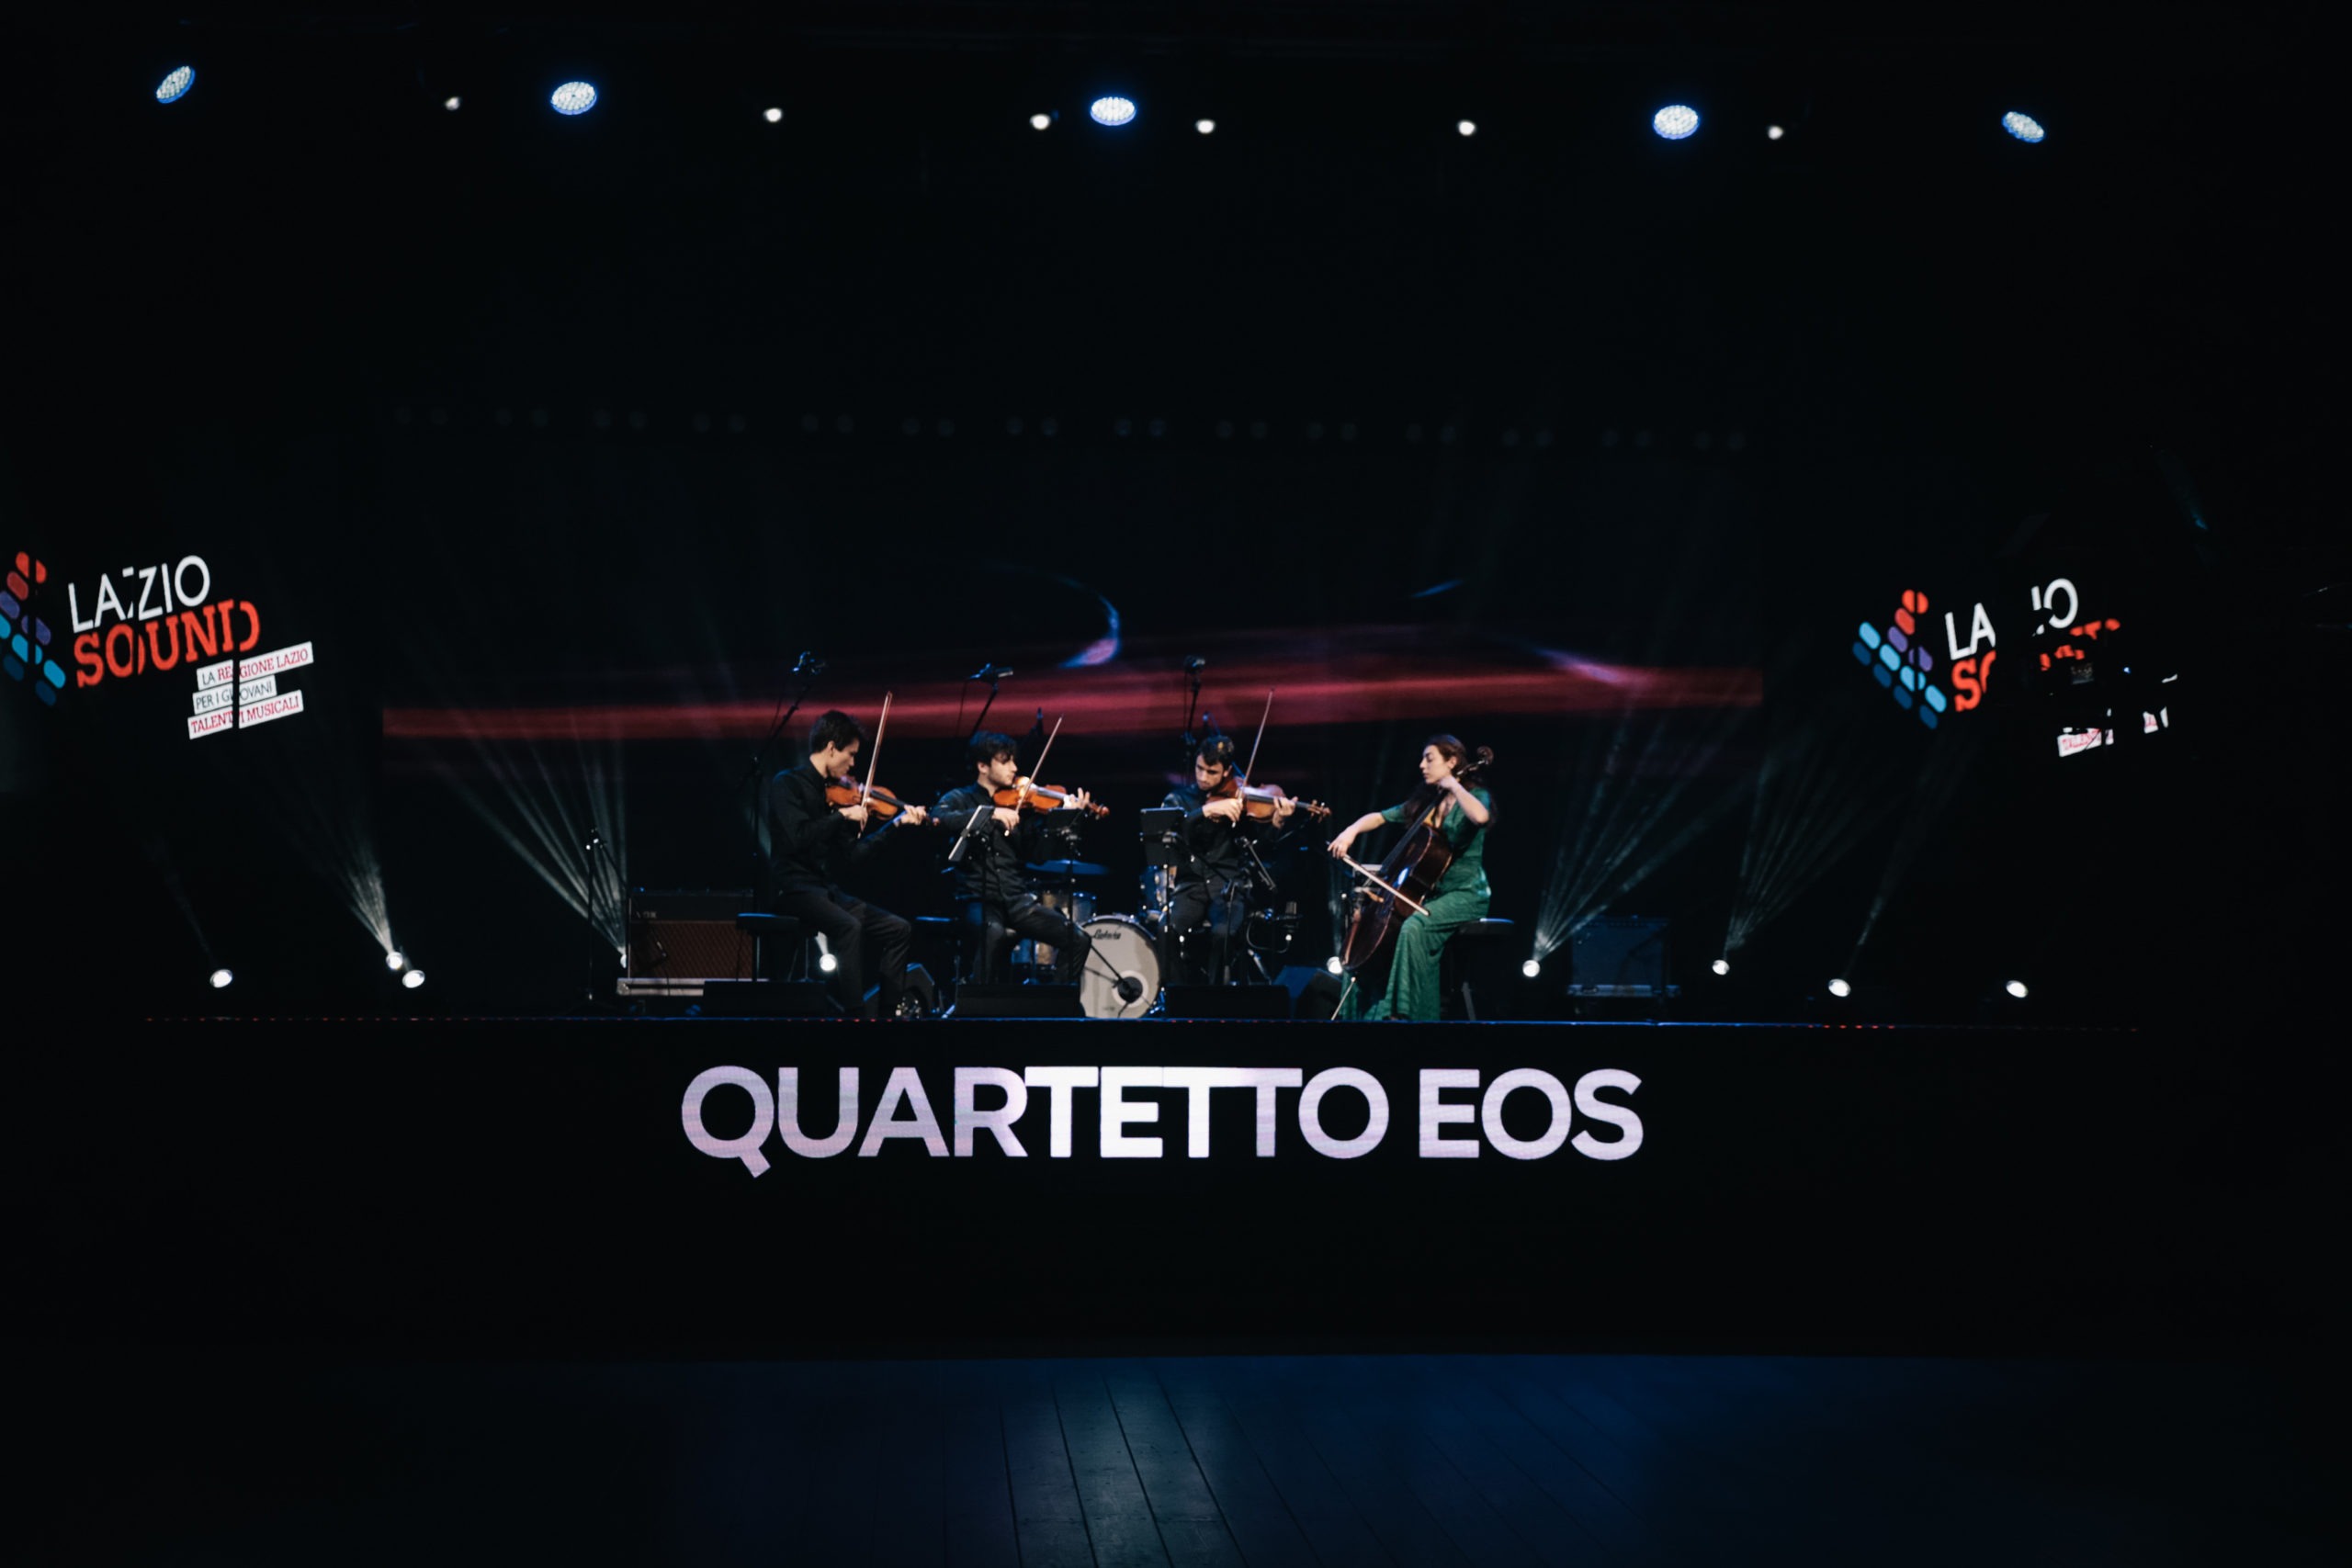 Quartetto Eos